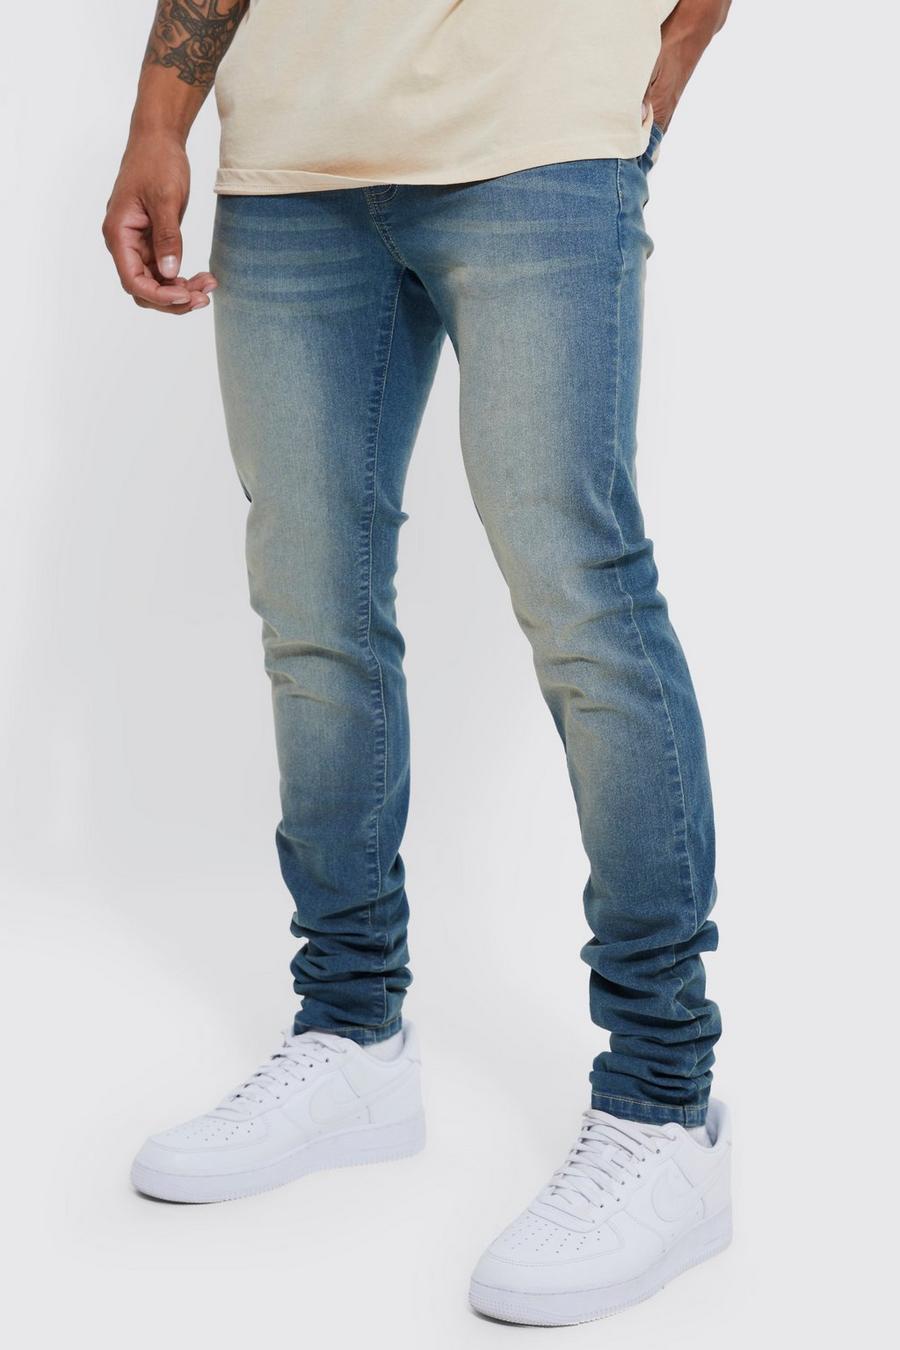 Skinny Jeans, Antique wash blue